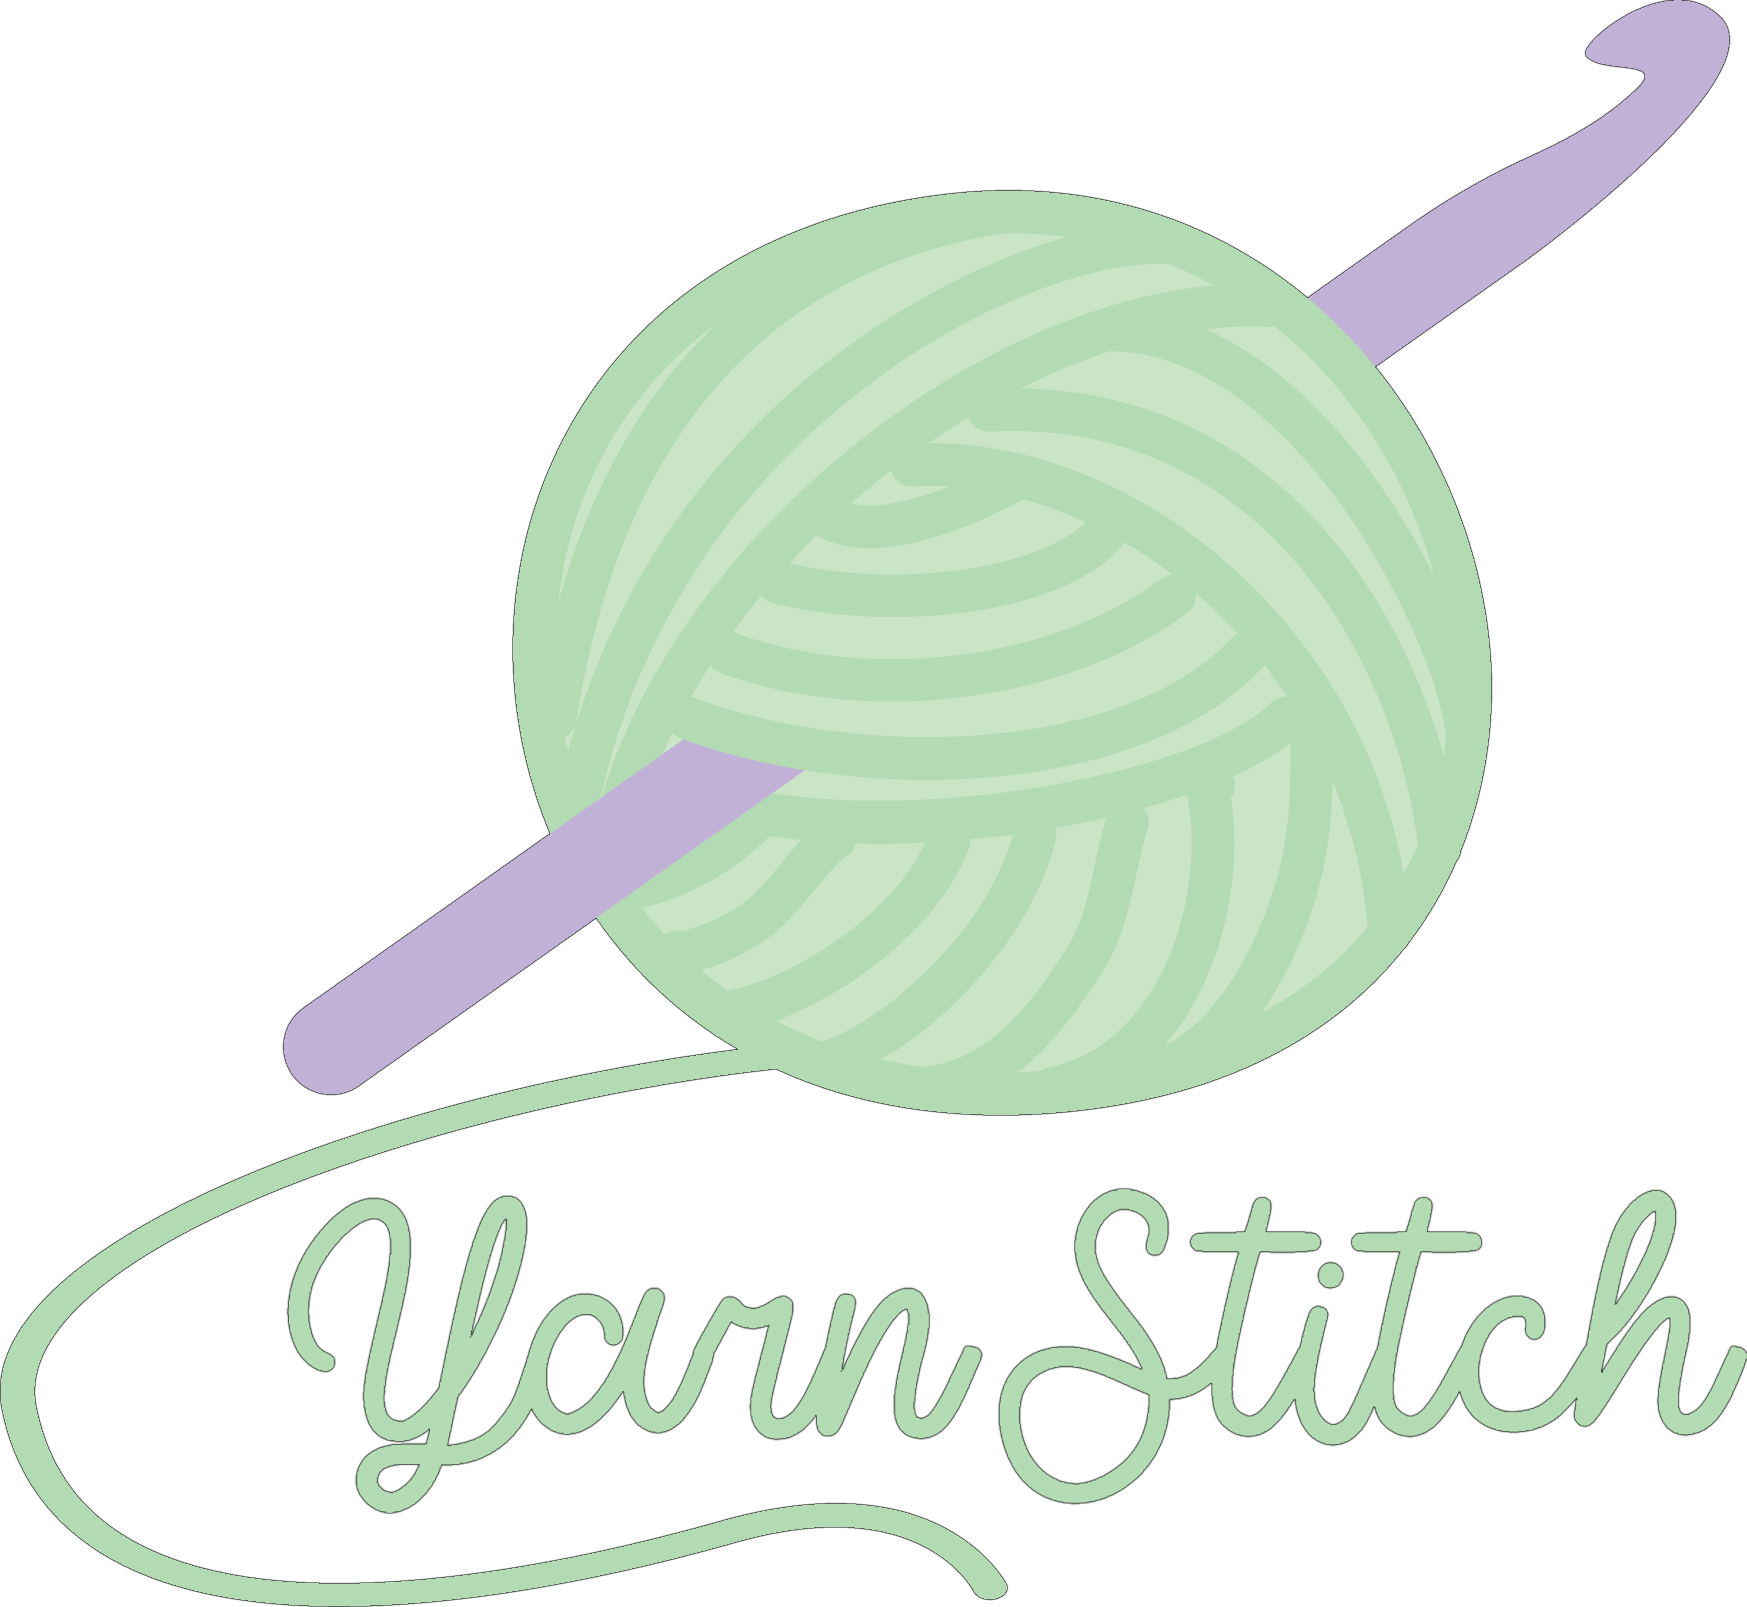 Yarn Stitch